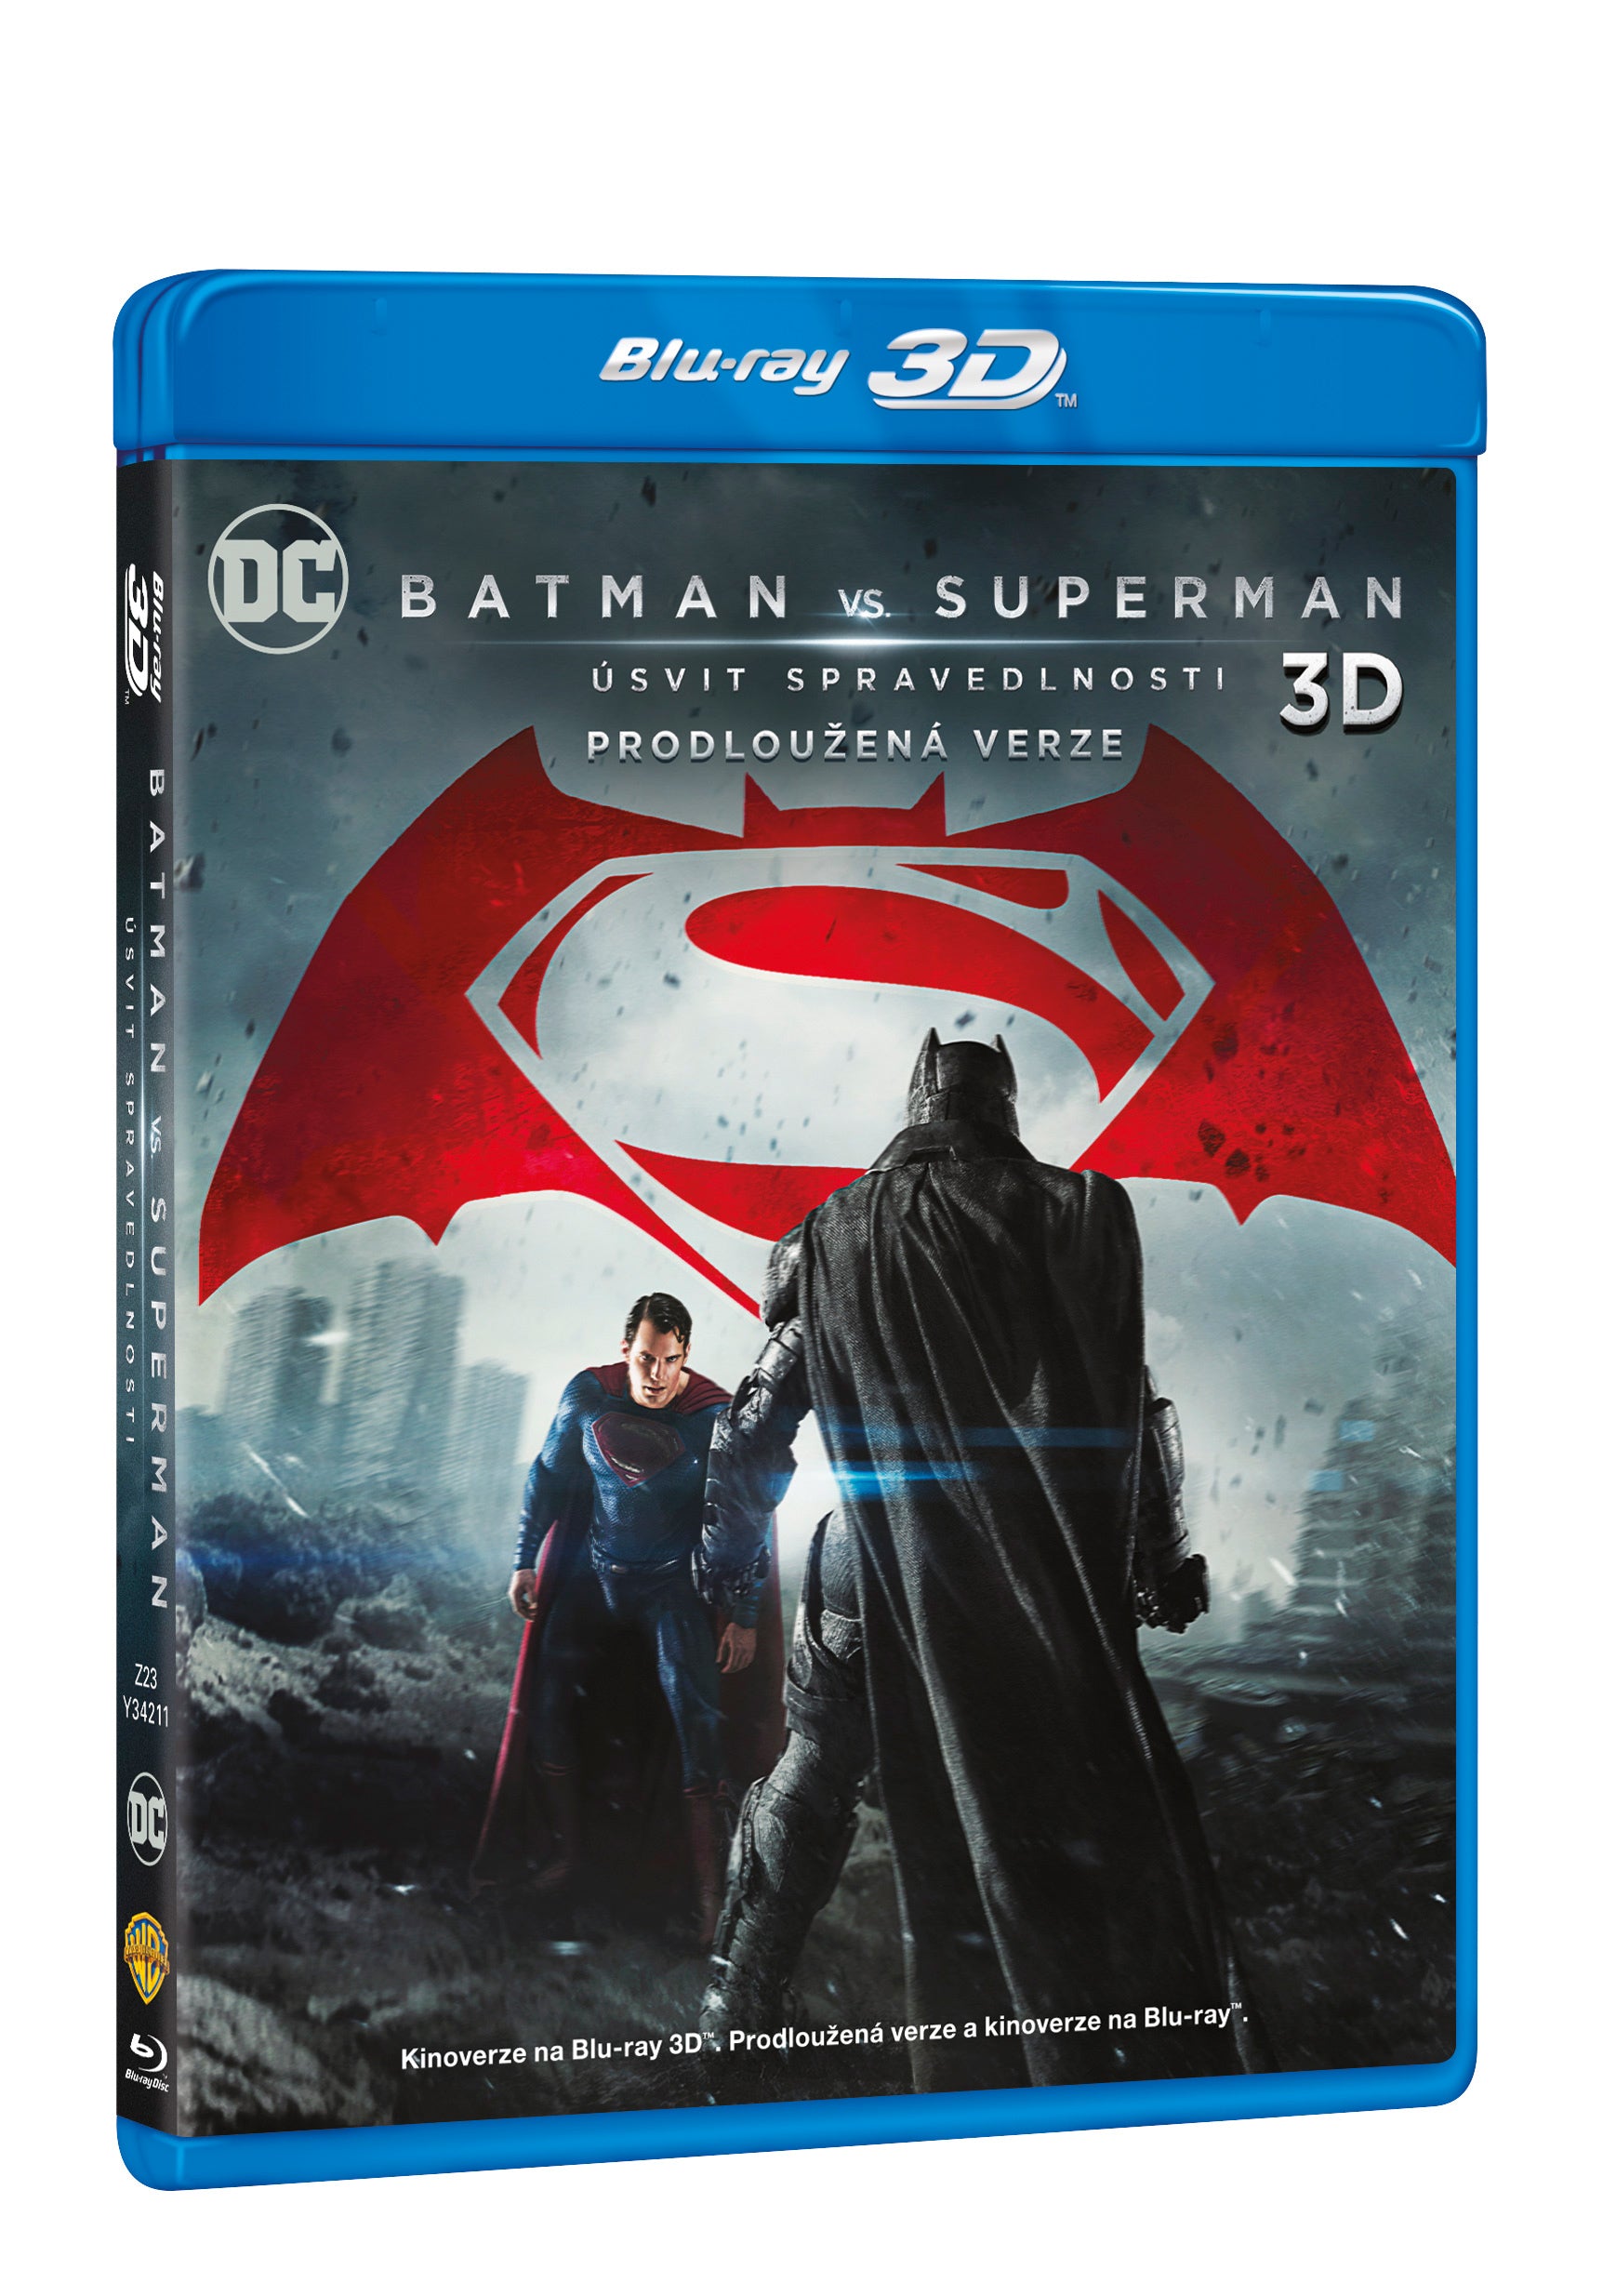 Batman vs. Superman: Usvit spravedlnosti 3BD (3D+2D+2D prodlouzena verze) / Batman v Superman: Dawn of Justice - Czech version